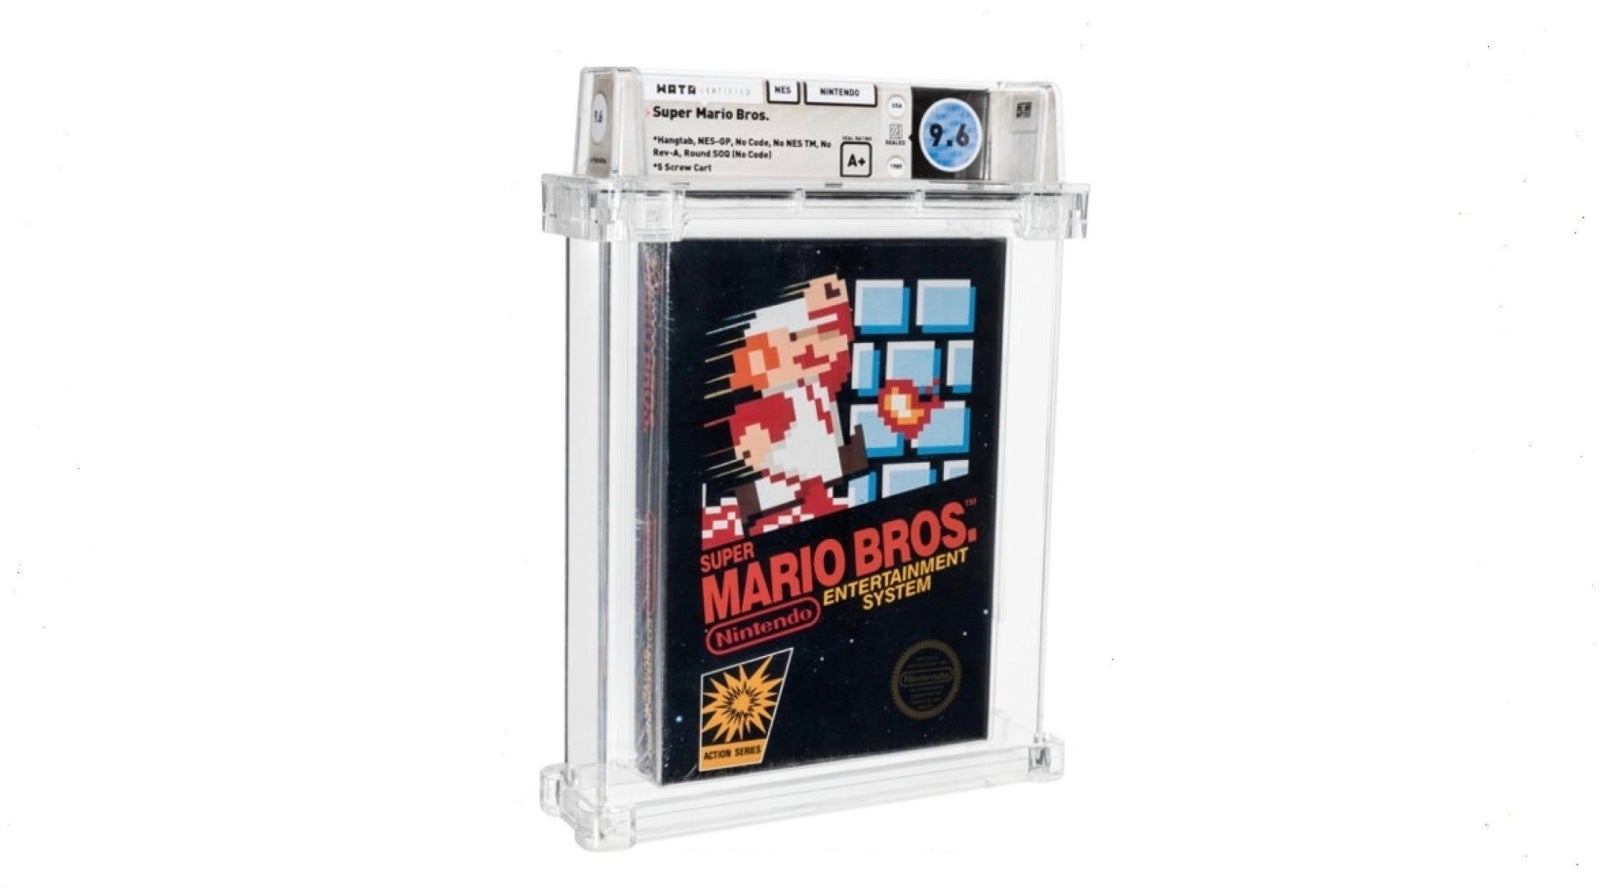 Imagen para Una copia nueva y sin abrir de Super Mario Bros. bate récords al venderse por 660.000 dólares